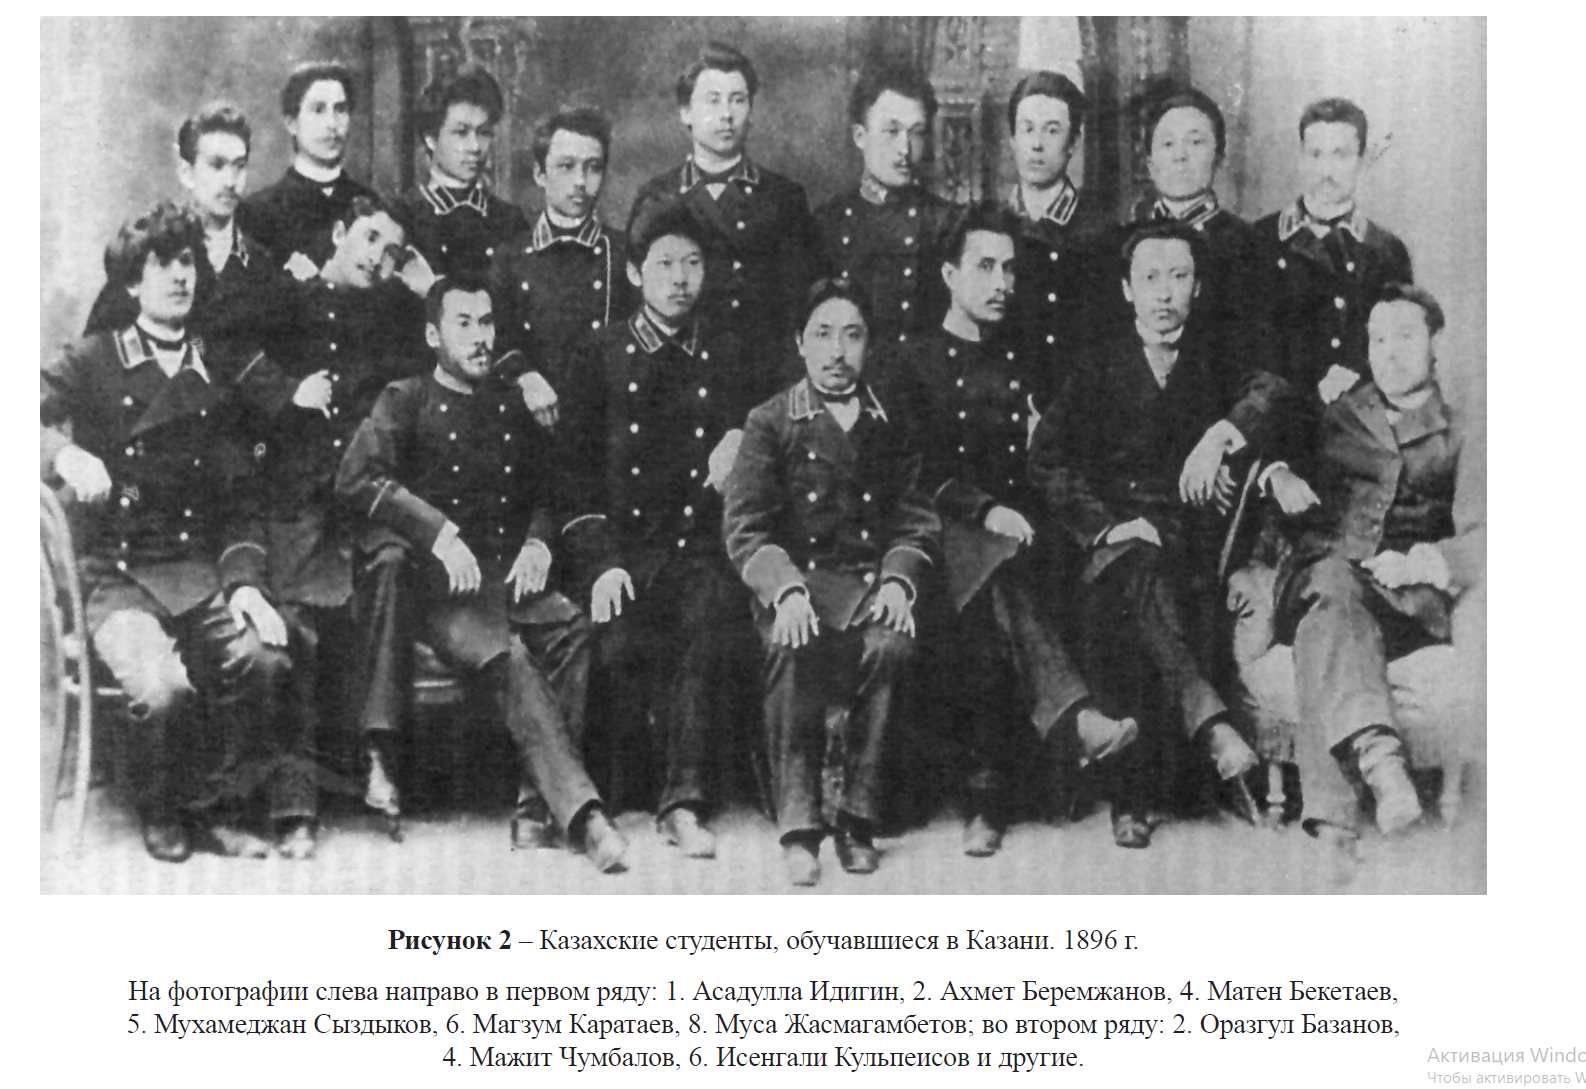 Казахские студенты, обучавшиеся в Казани. 1896 г.